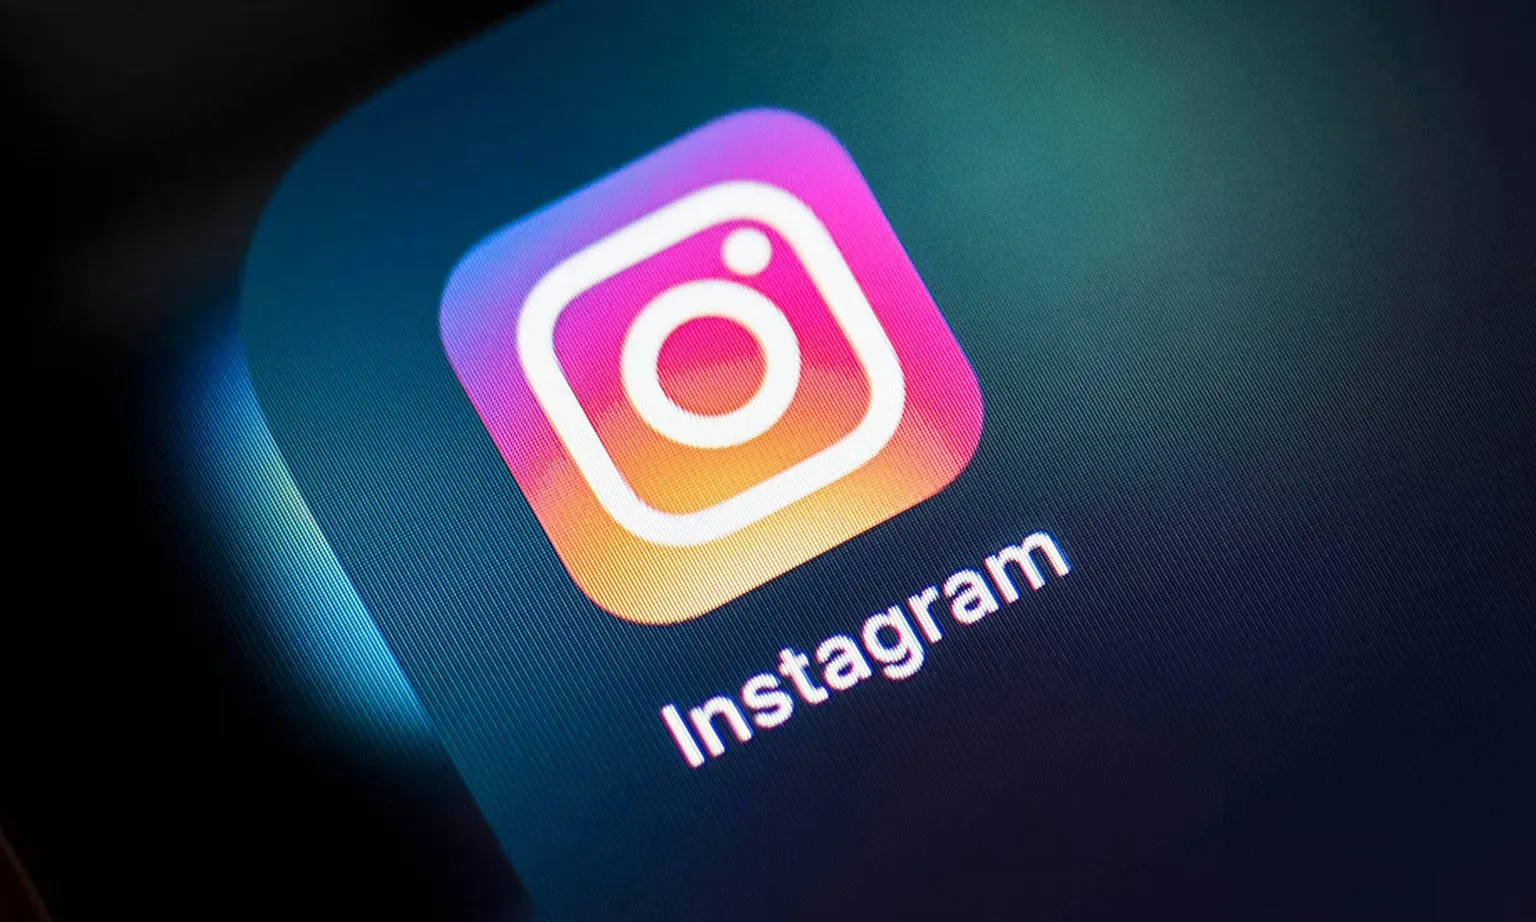 Instagram sẽ làm mờ ảnh khỏa thân trong tin nhắn nhằm bảo vệ thanh thiếu niên